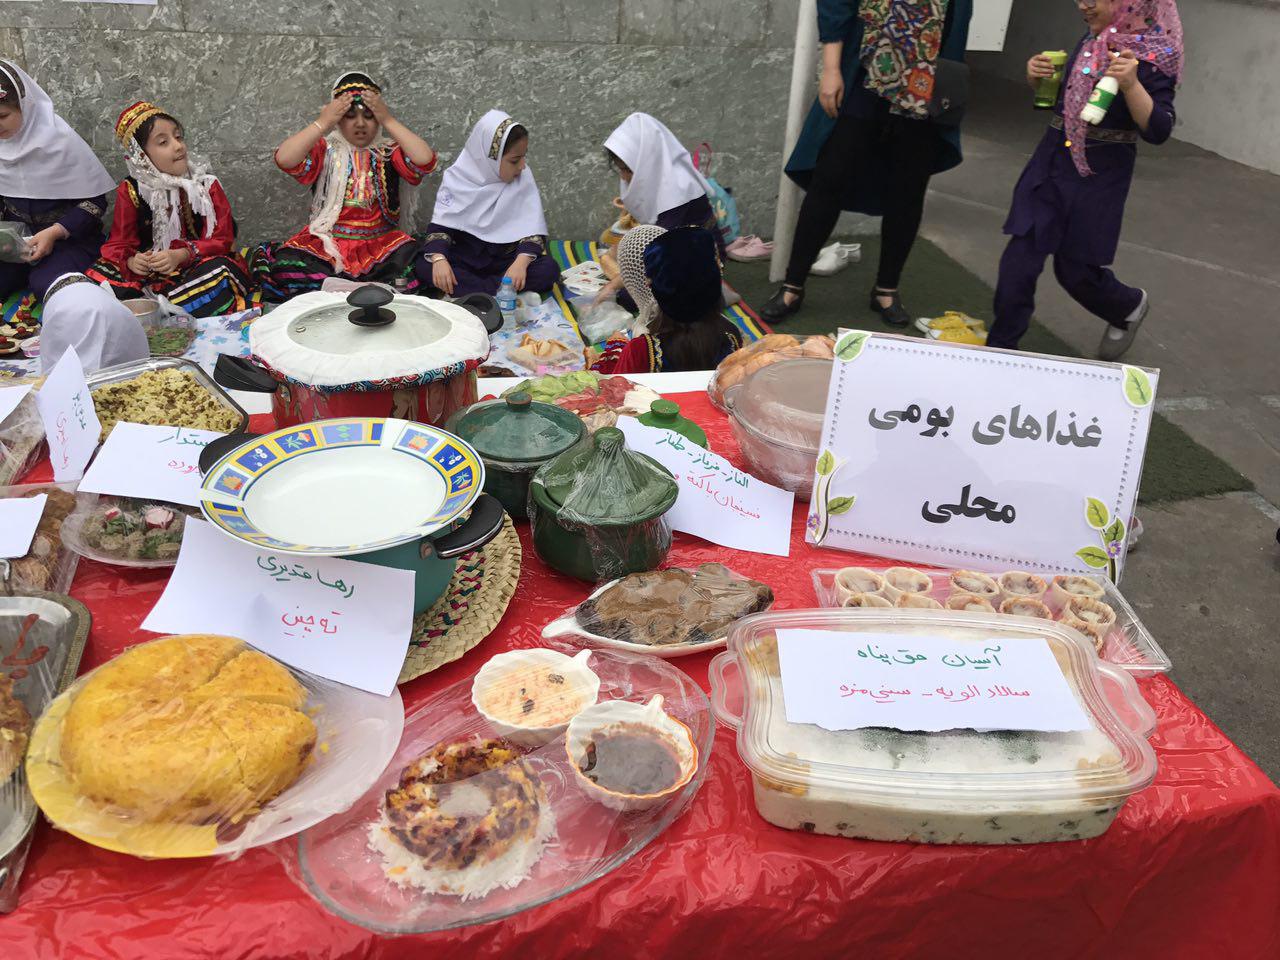 جشنواره غذای سالم بومی، محلی باران اندیشه